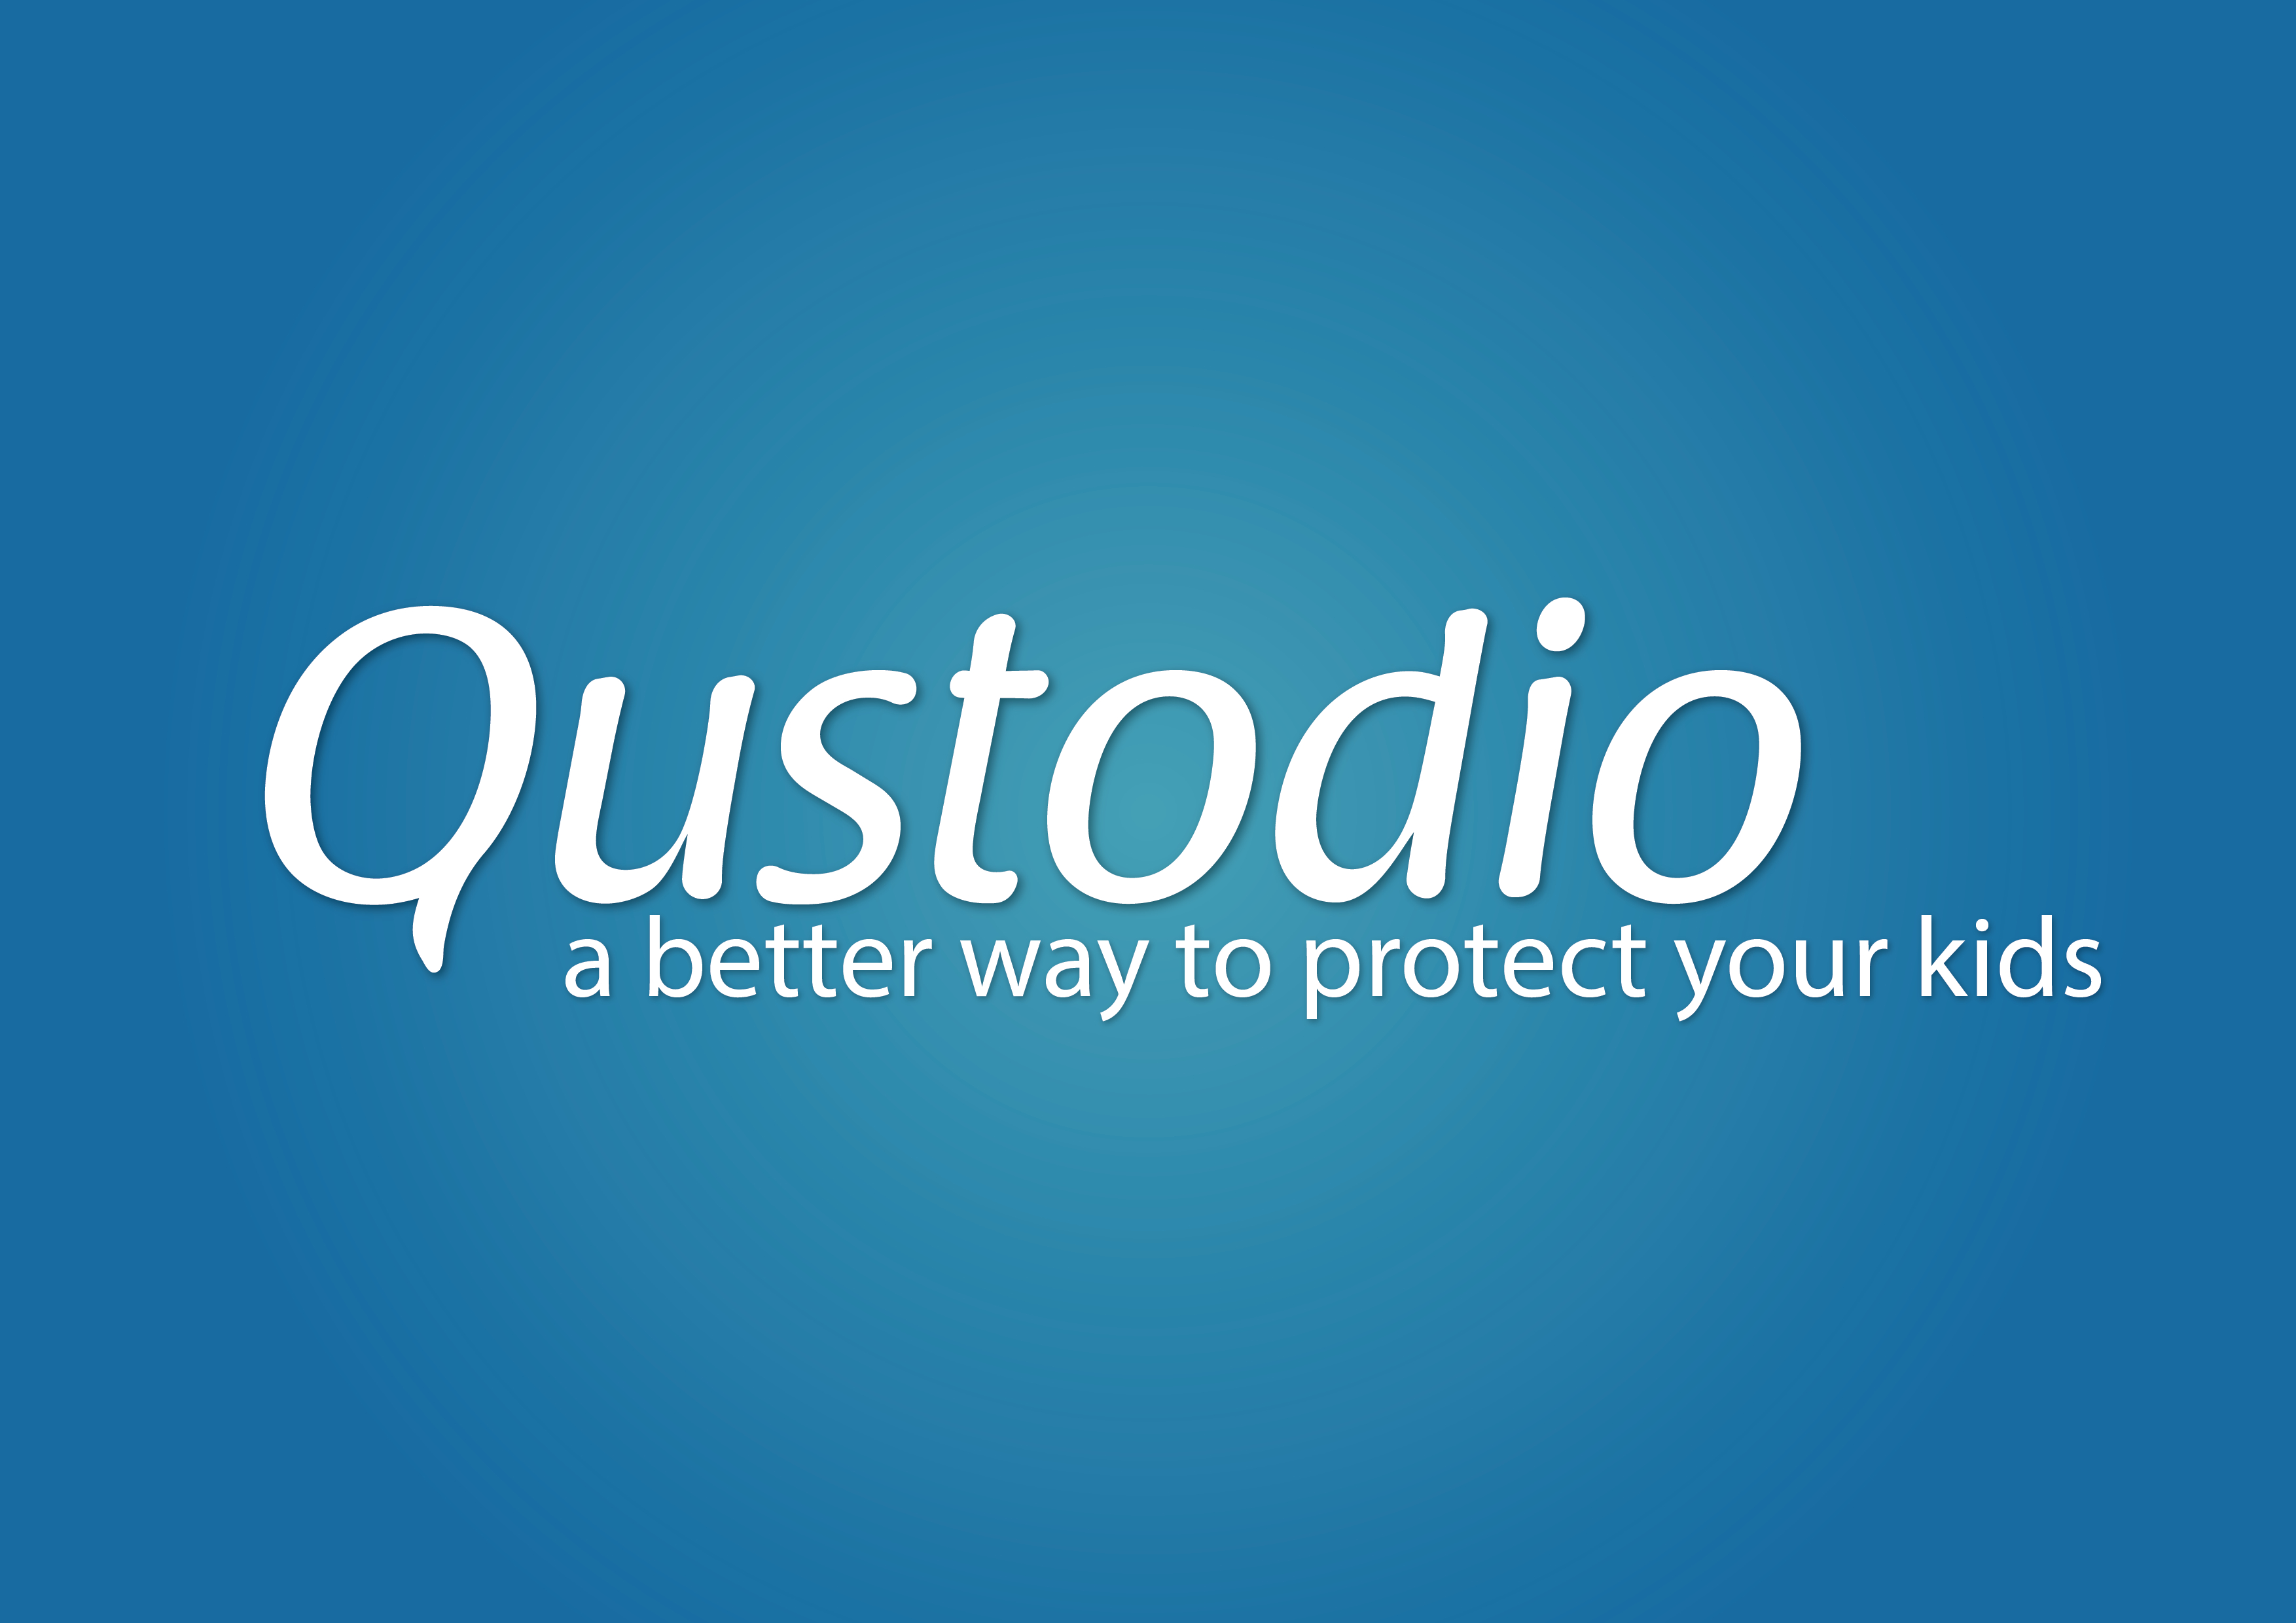 qustodio free features